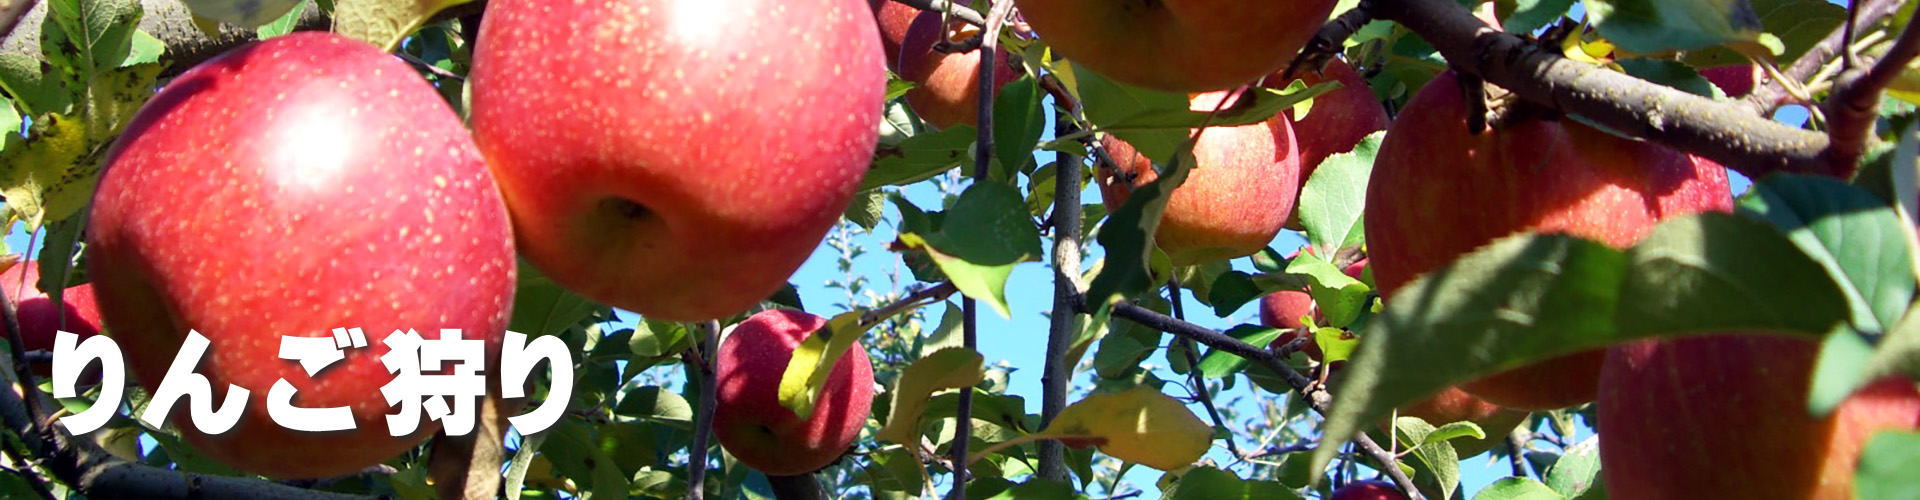 南信州柴本農園のりんご狩り